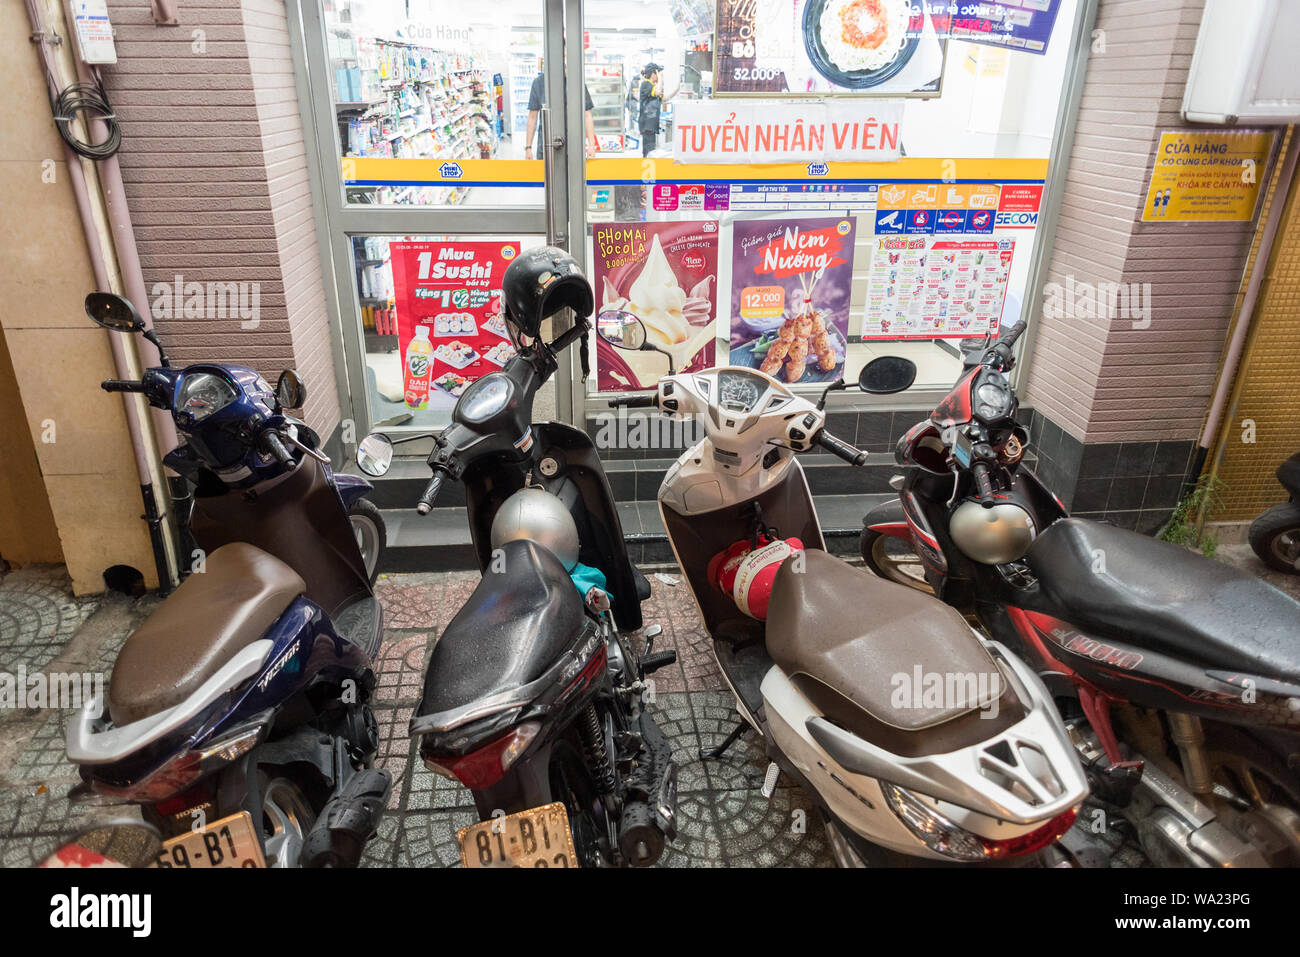 Ho Chi Minh City, Vietnam - Mai 3, 2019: ungünstig geparkte Motorräder Block die Eingangstür eines Convenience Store. Stockfoto